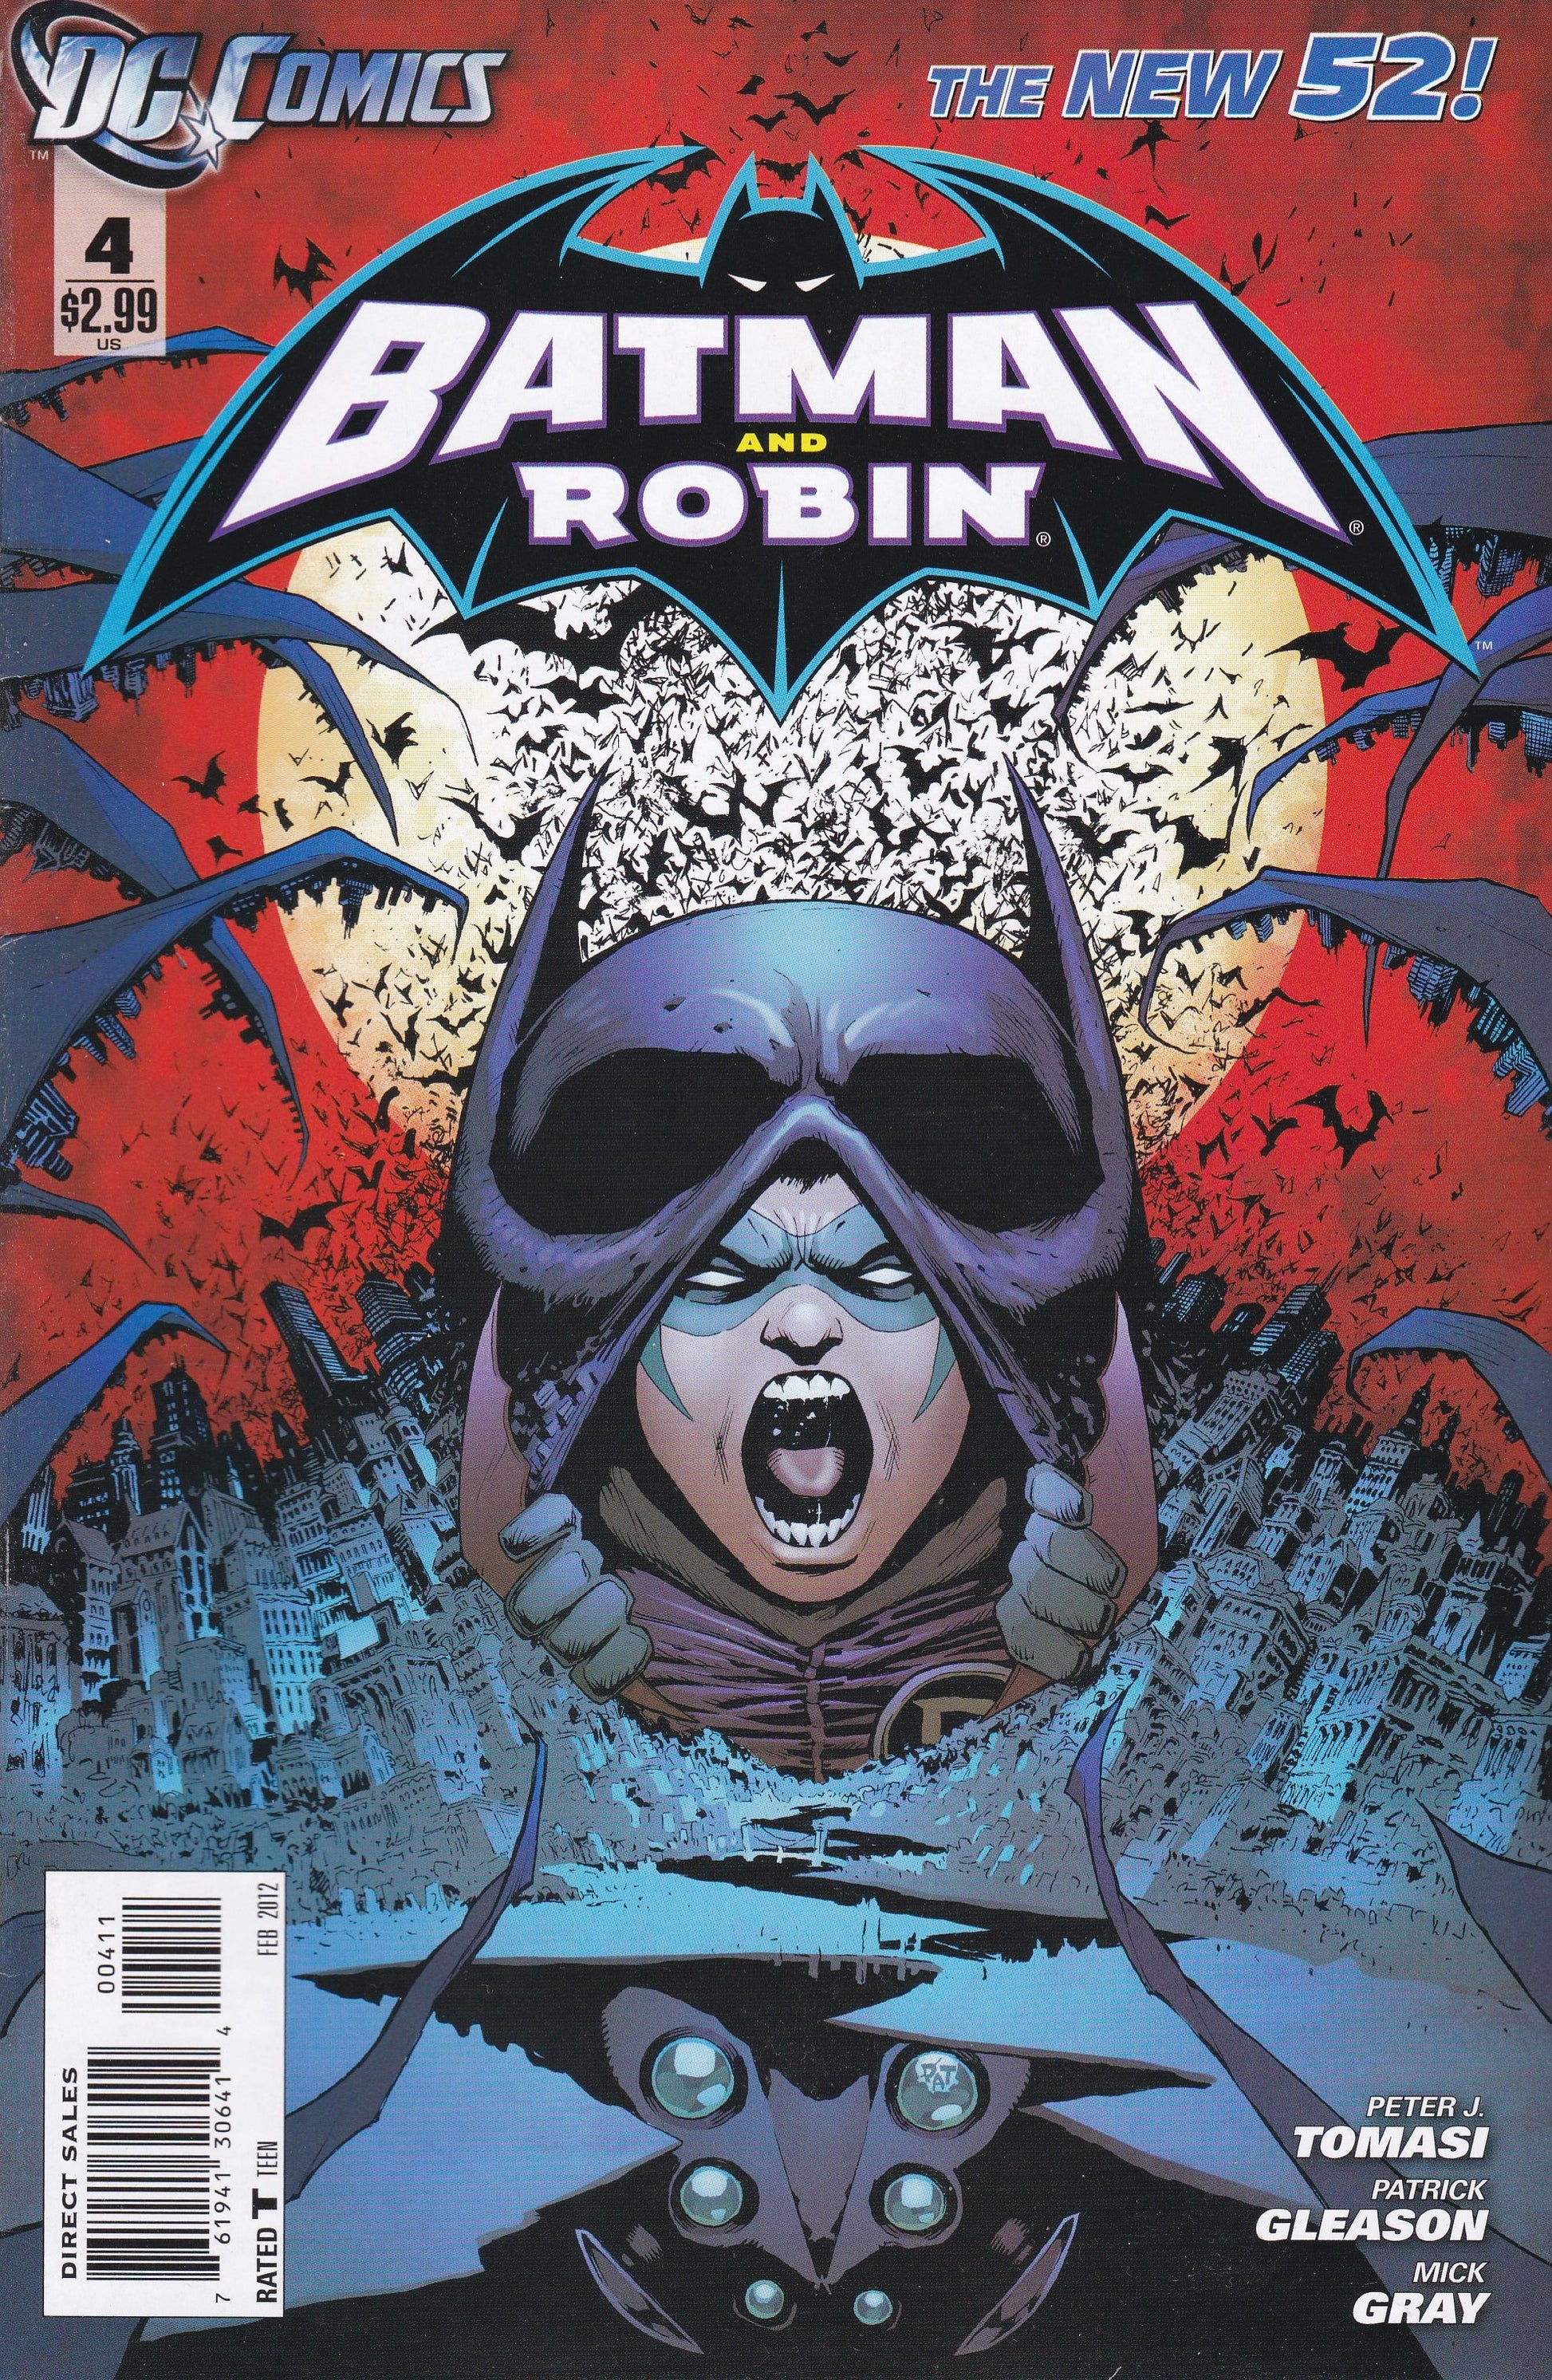 Batman and Robin # 4 DC Comics The New 52! Vol. 2 –  